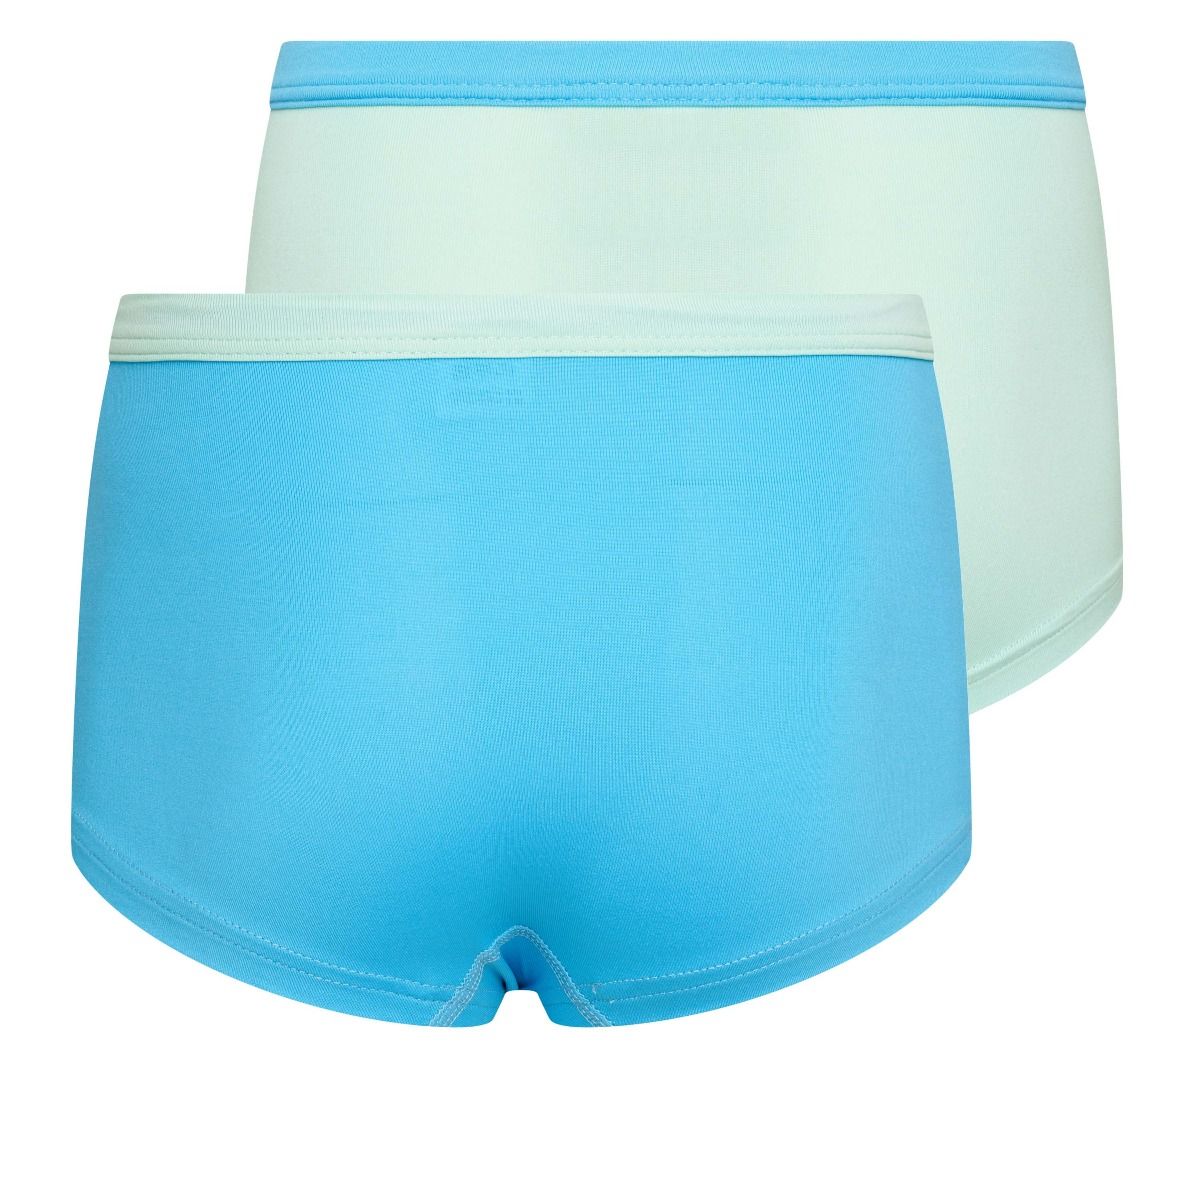 Beeren 2Pack Mix Match Meisjes Boxershorts Mint Turquoise achterkant